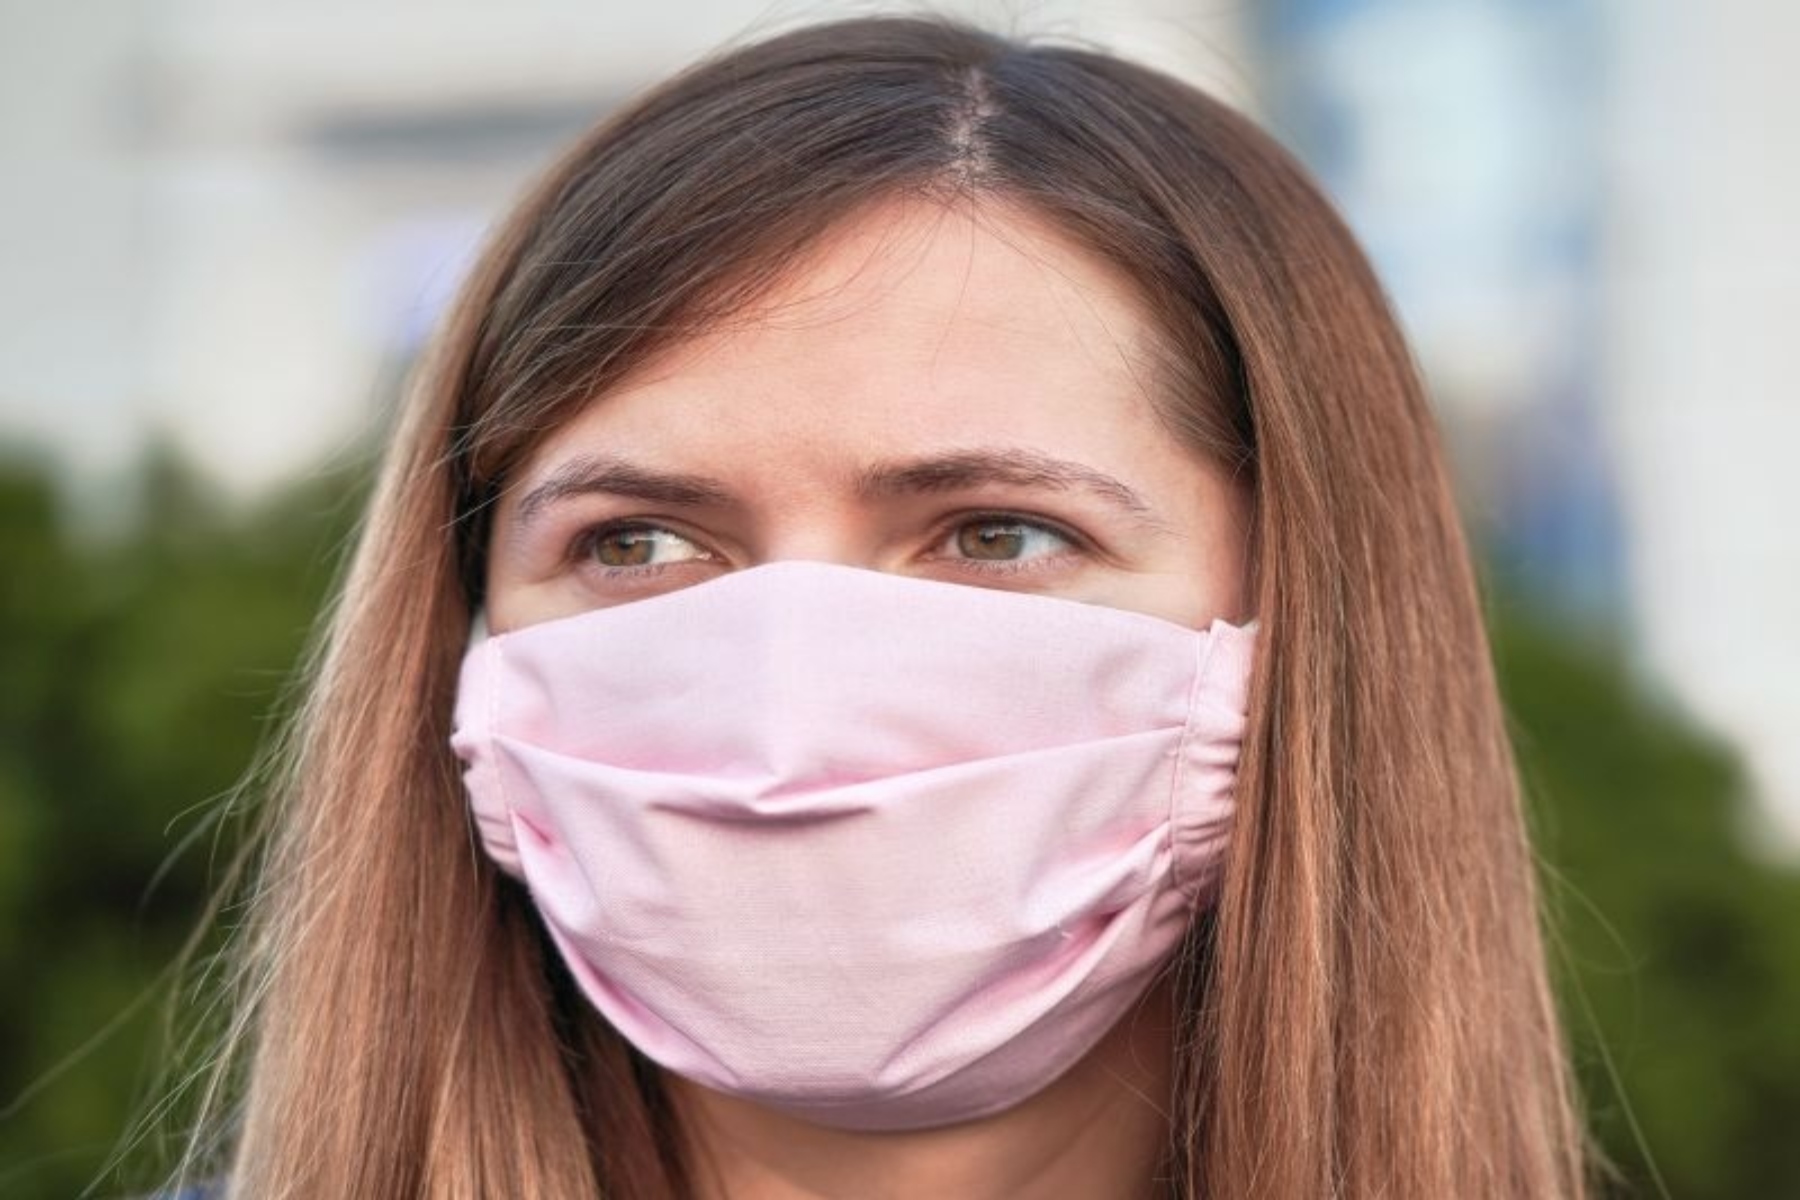 Μάσκα CO2: Η παρατεταμένη χρήση μάσκας αυξάνει τα επίπεδα διοξειδίου του άνθρακα;